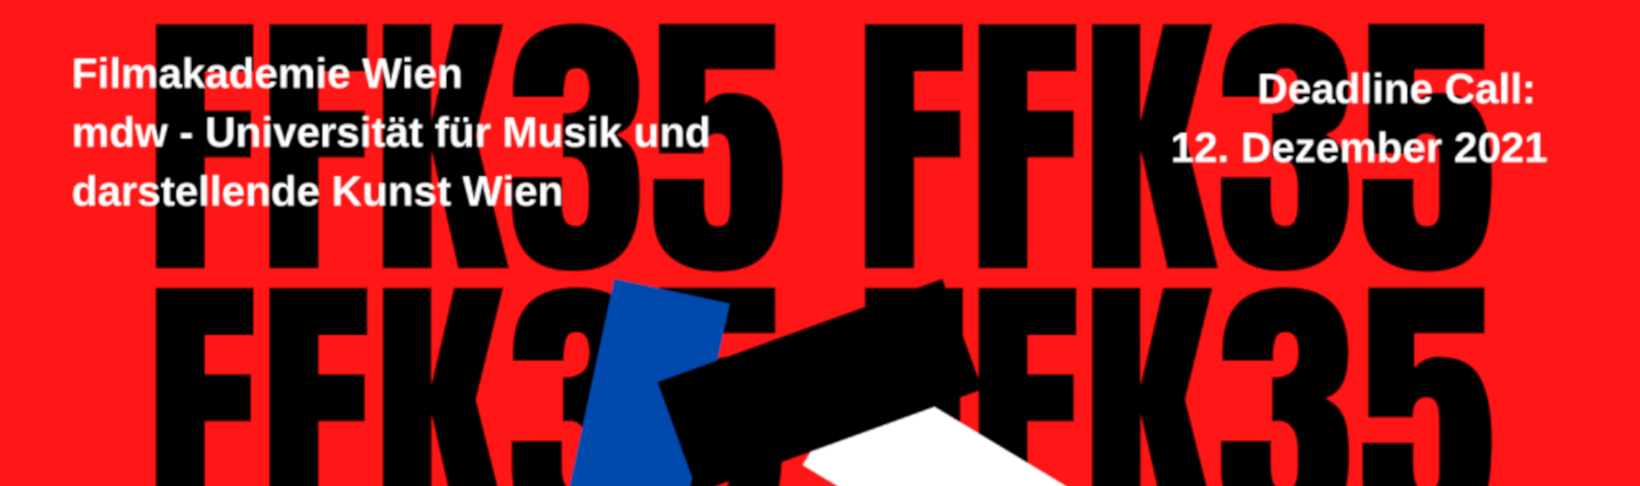 ffk35